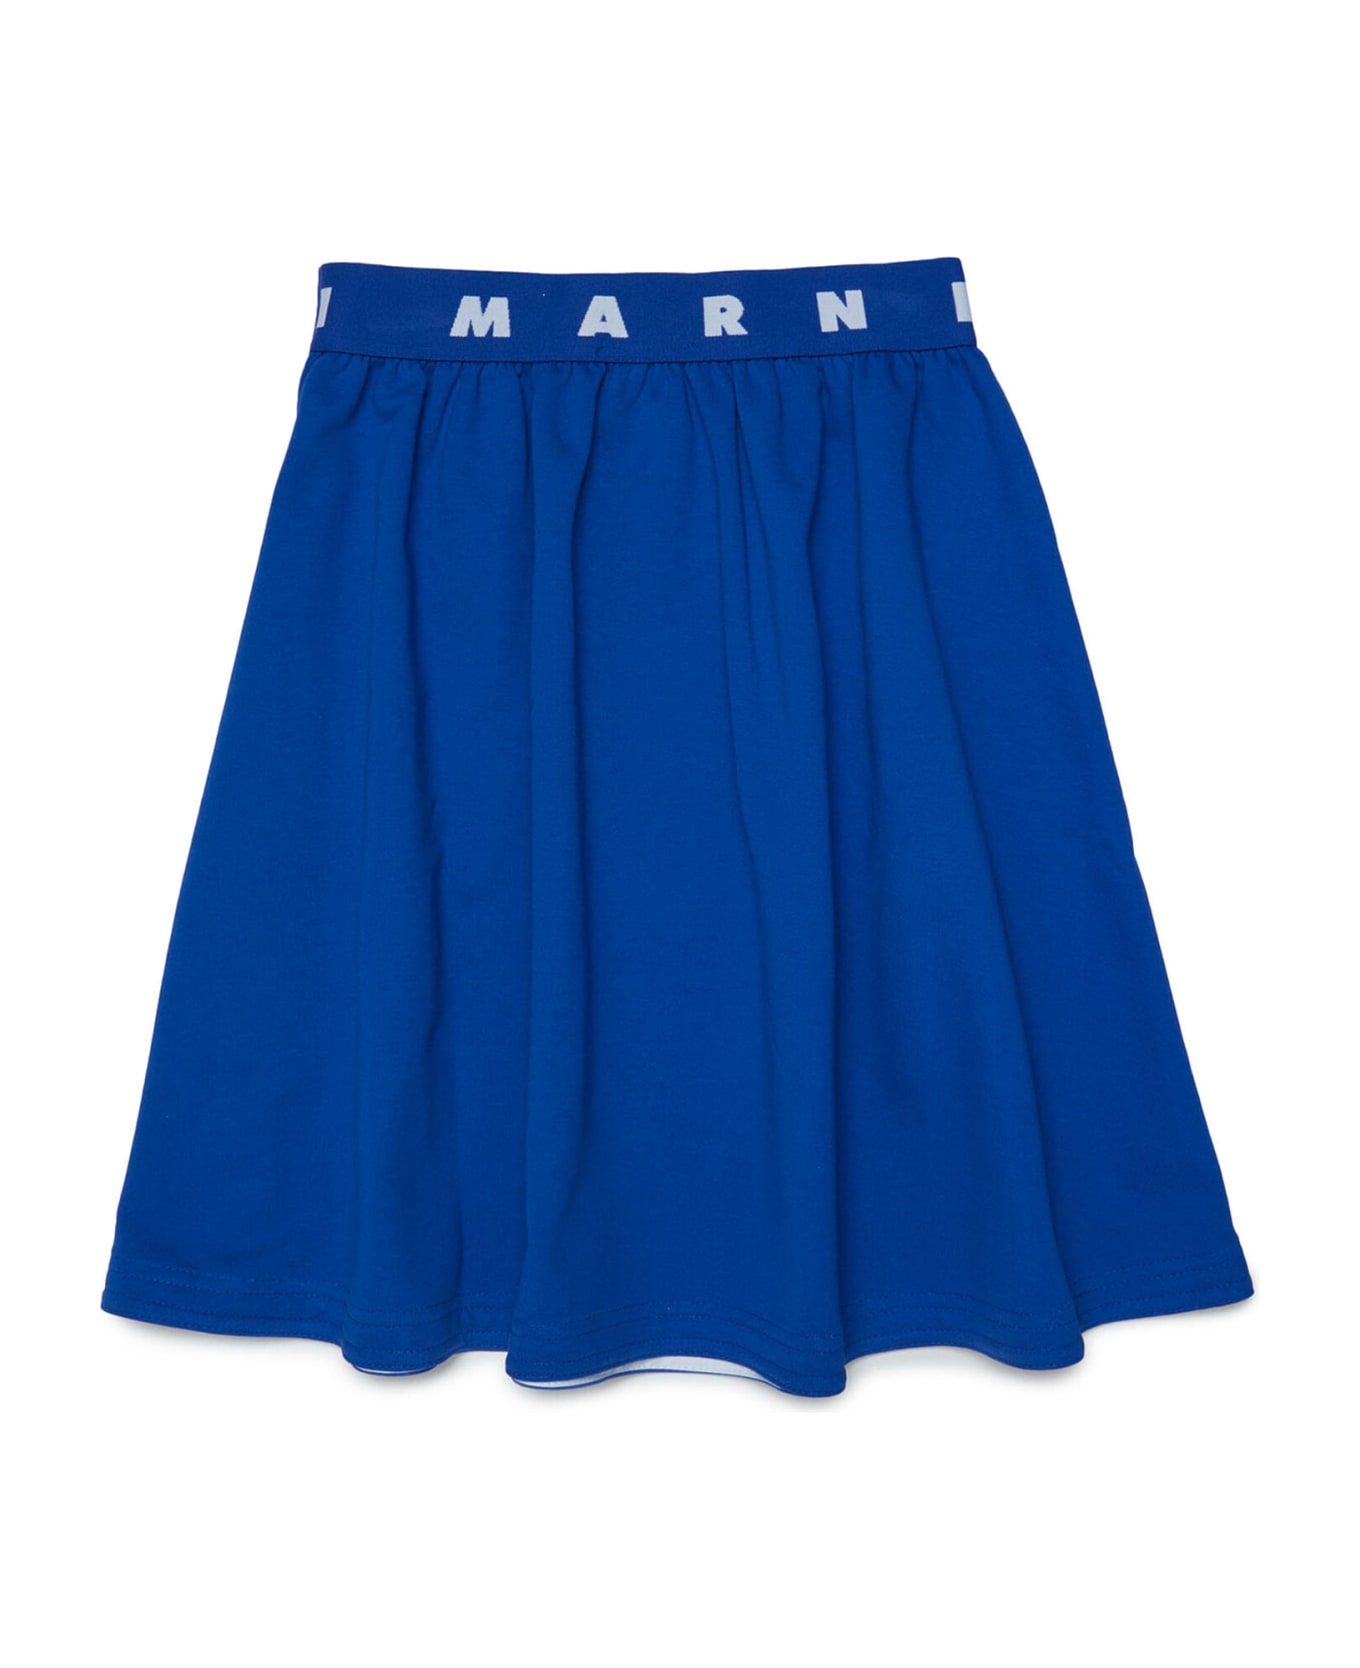 Marni Mg112f Skirt Marni Blue Plush Skirt With Daisy Pattern - Marni S S Organic Jersey Tee Lily White